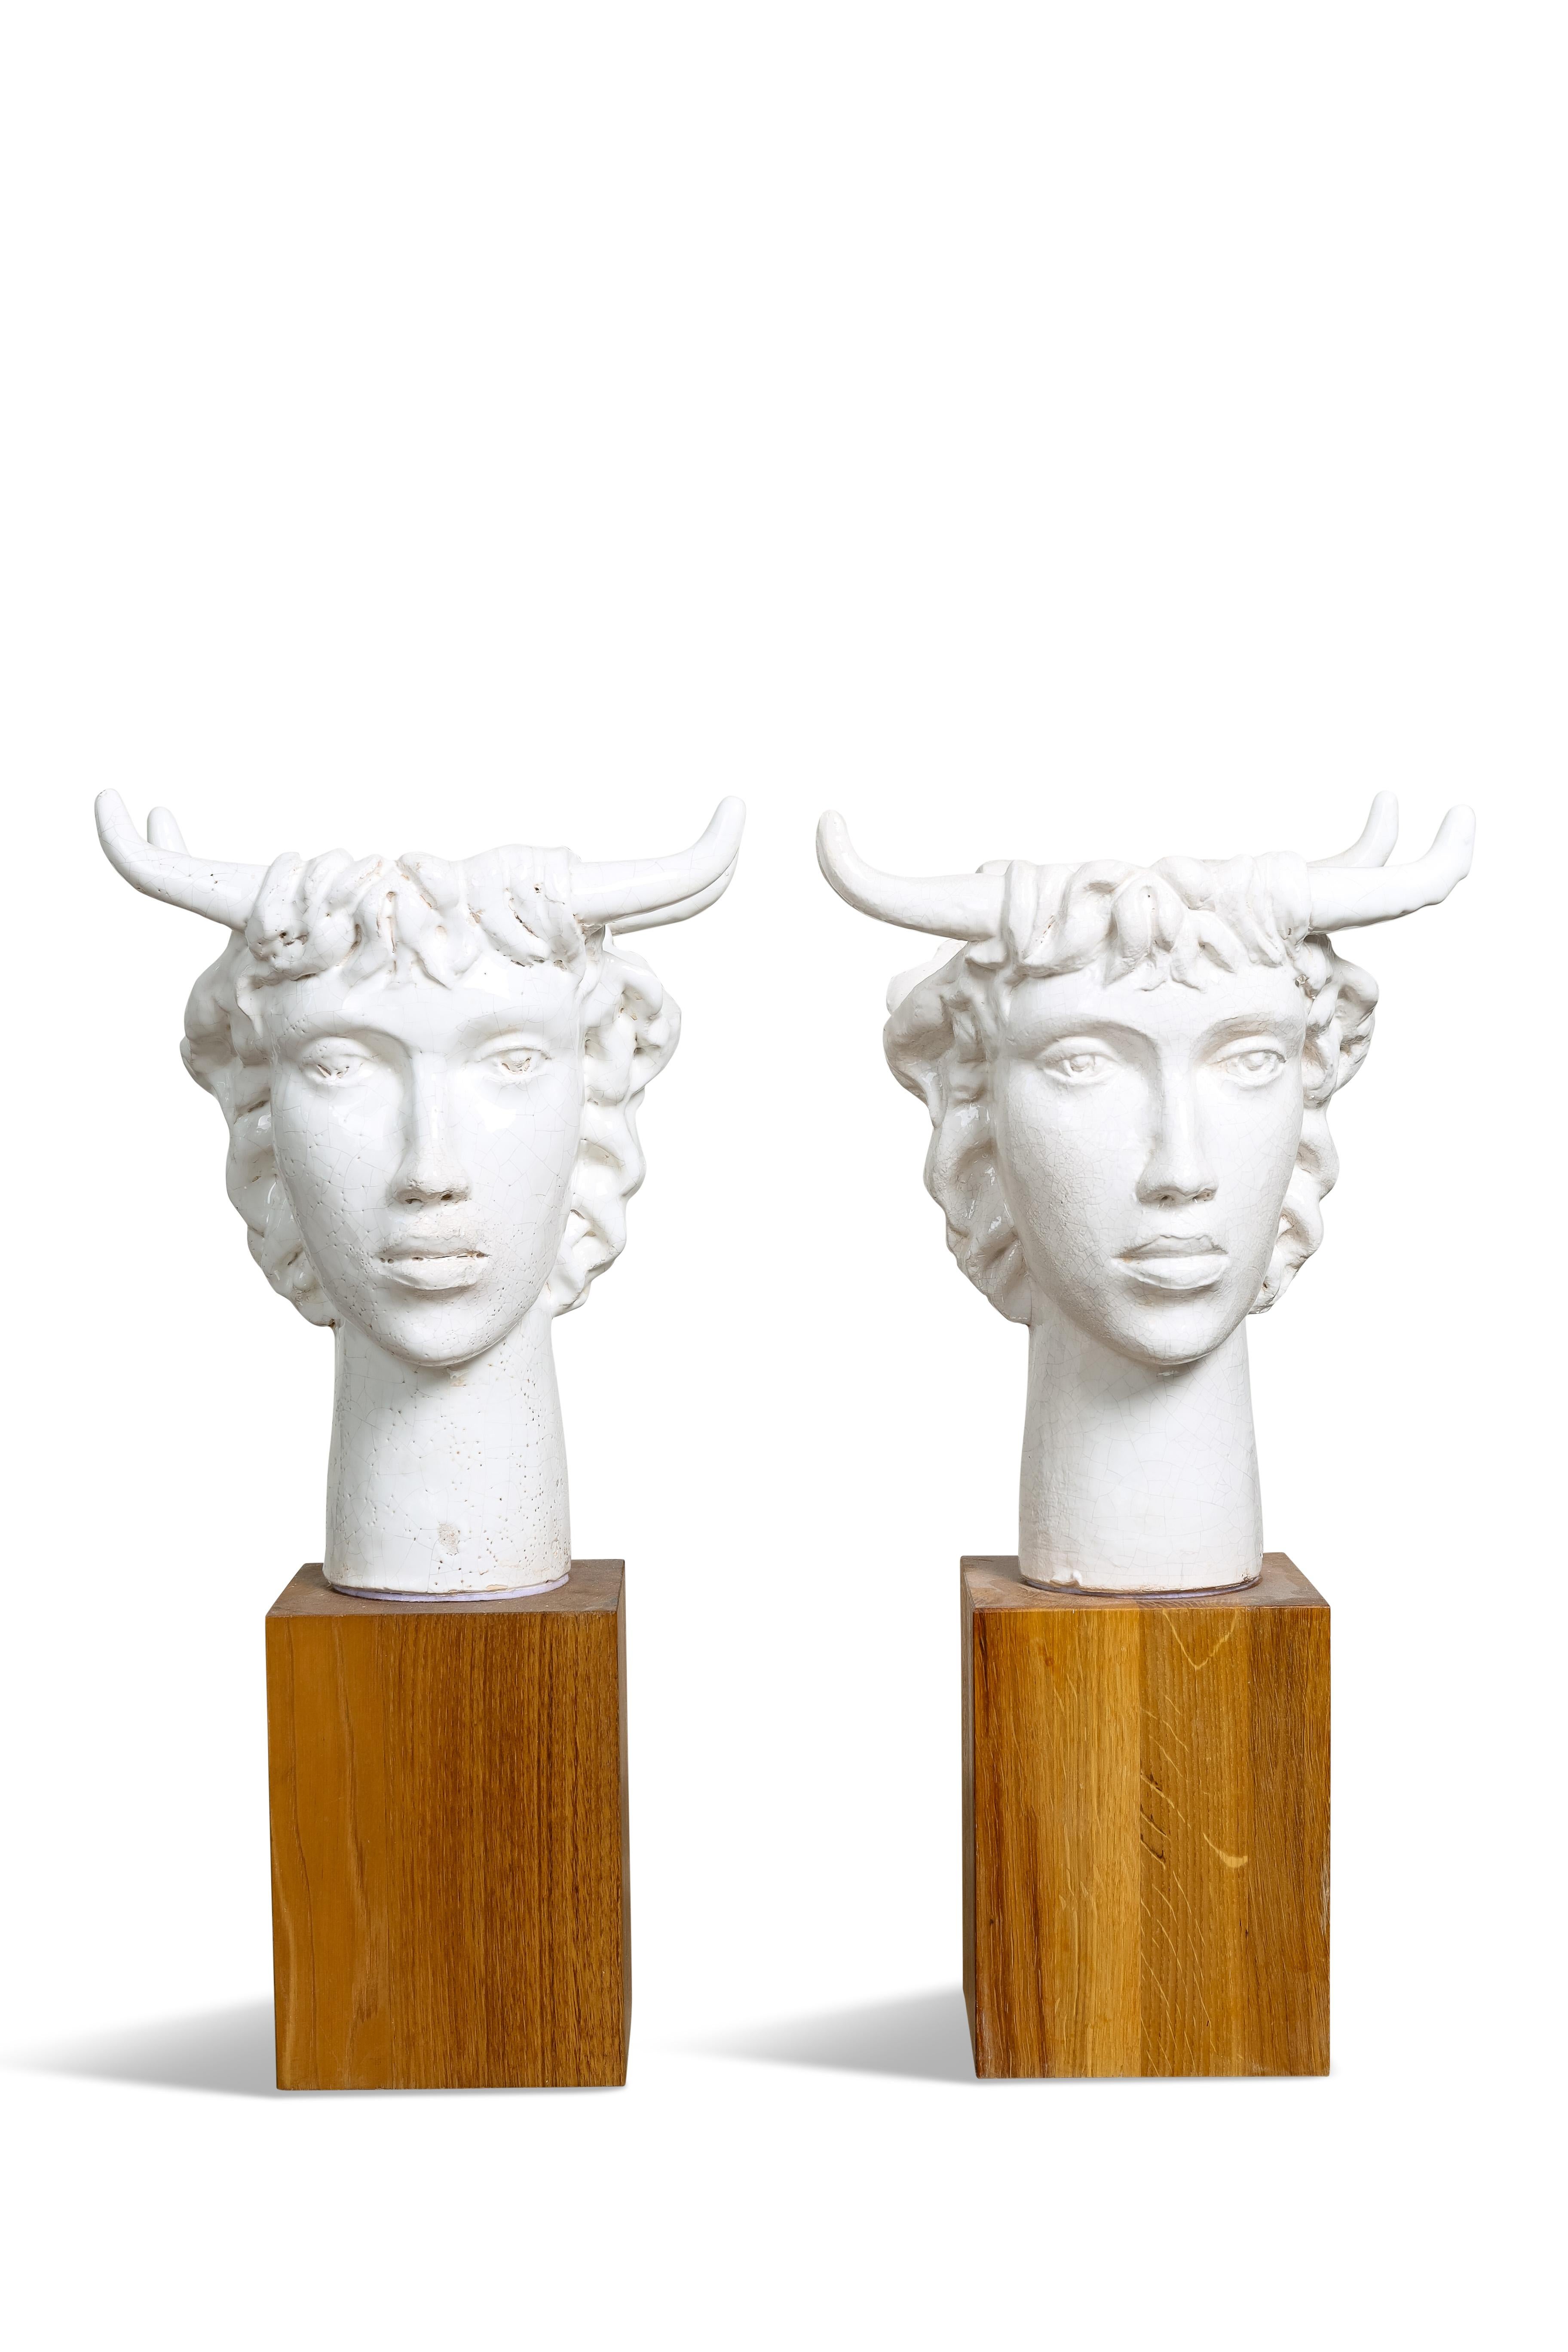 Neoclassical Revival Jacques Darbaud Spectacular Pair of Janus Ceramic Lamps For Sale